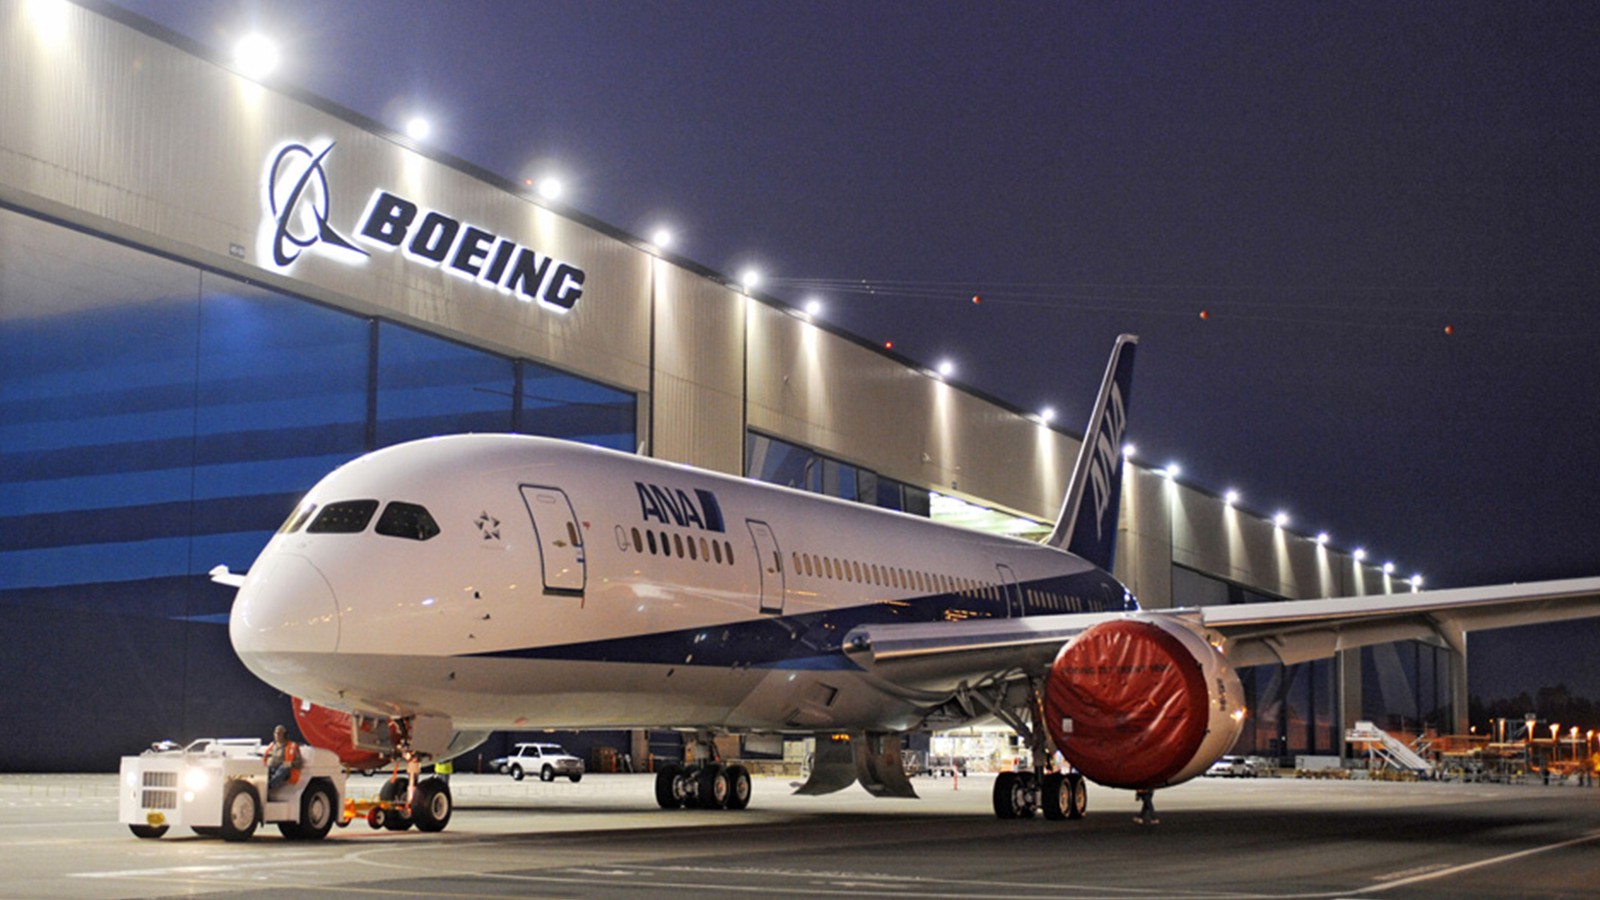 После авиакатастрофы в Эфиопии акции Boeing упали на 10%  